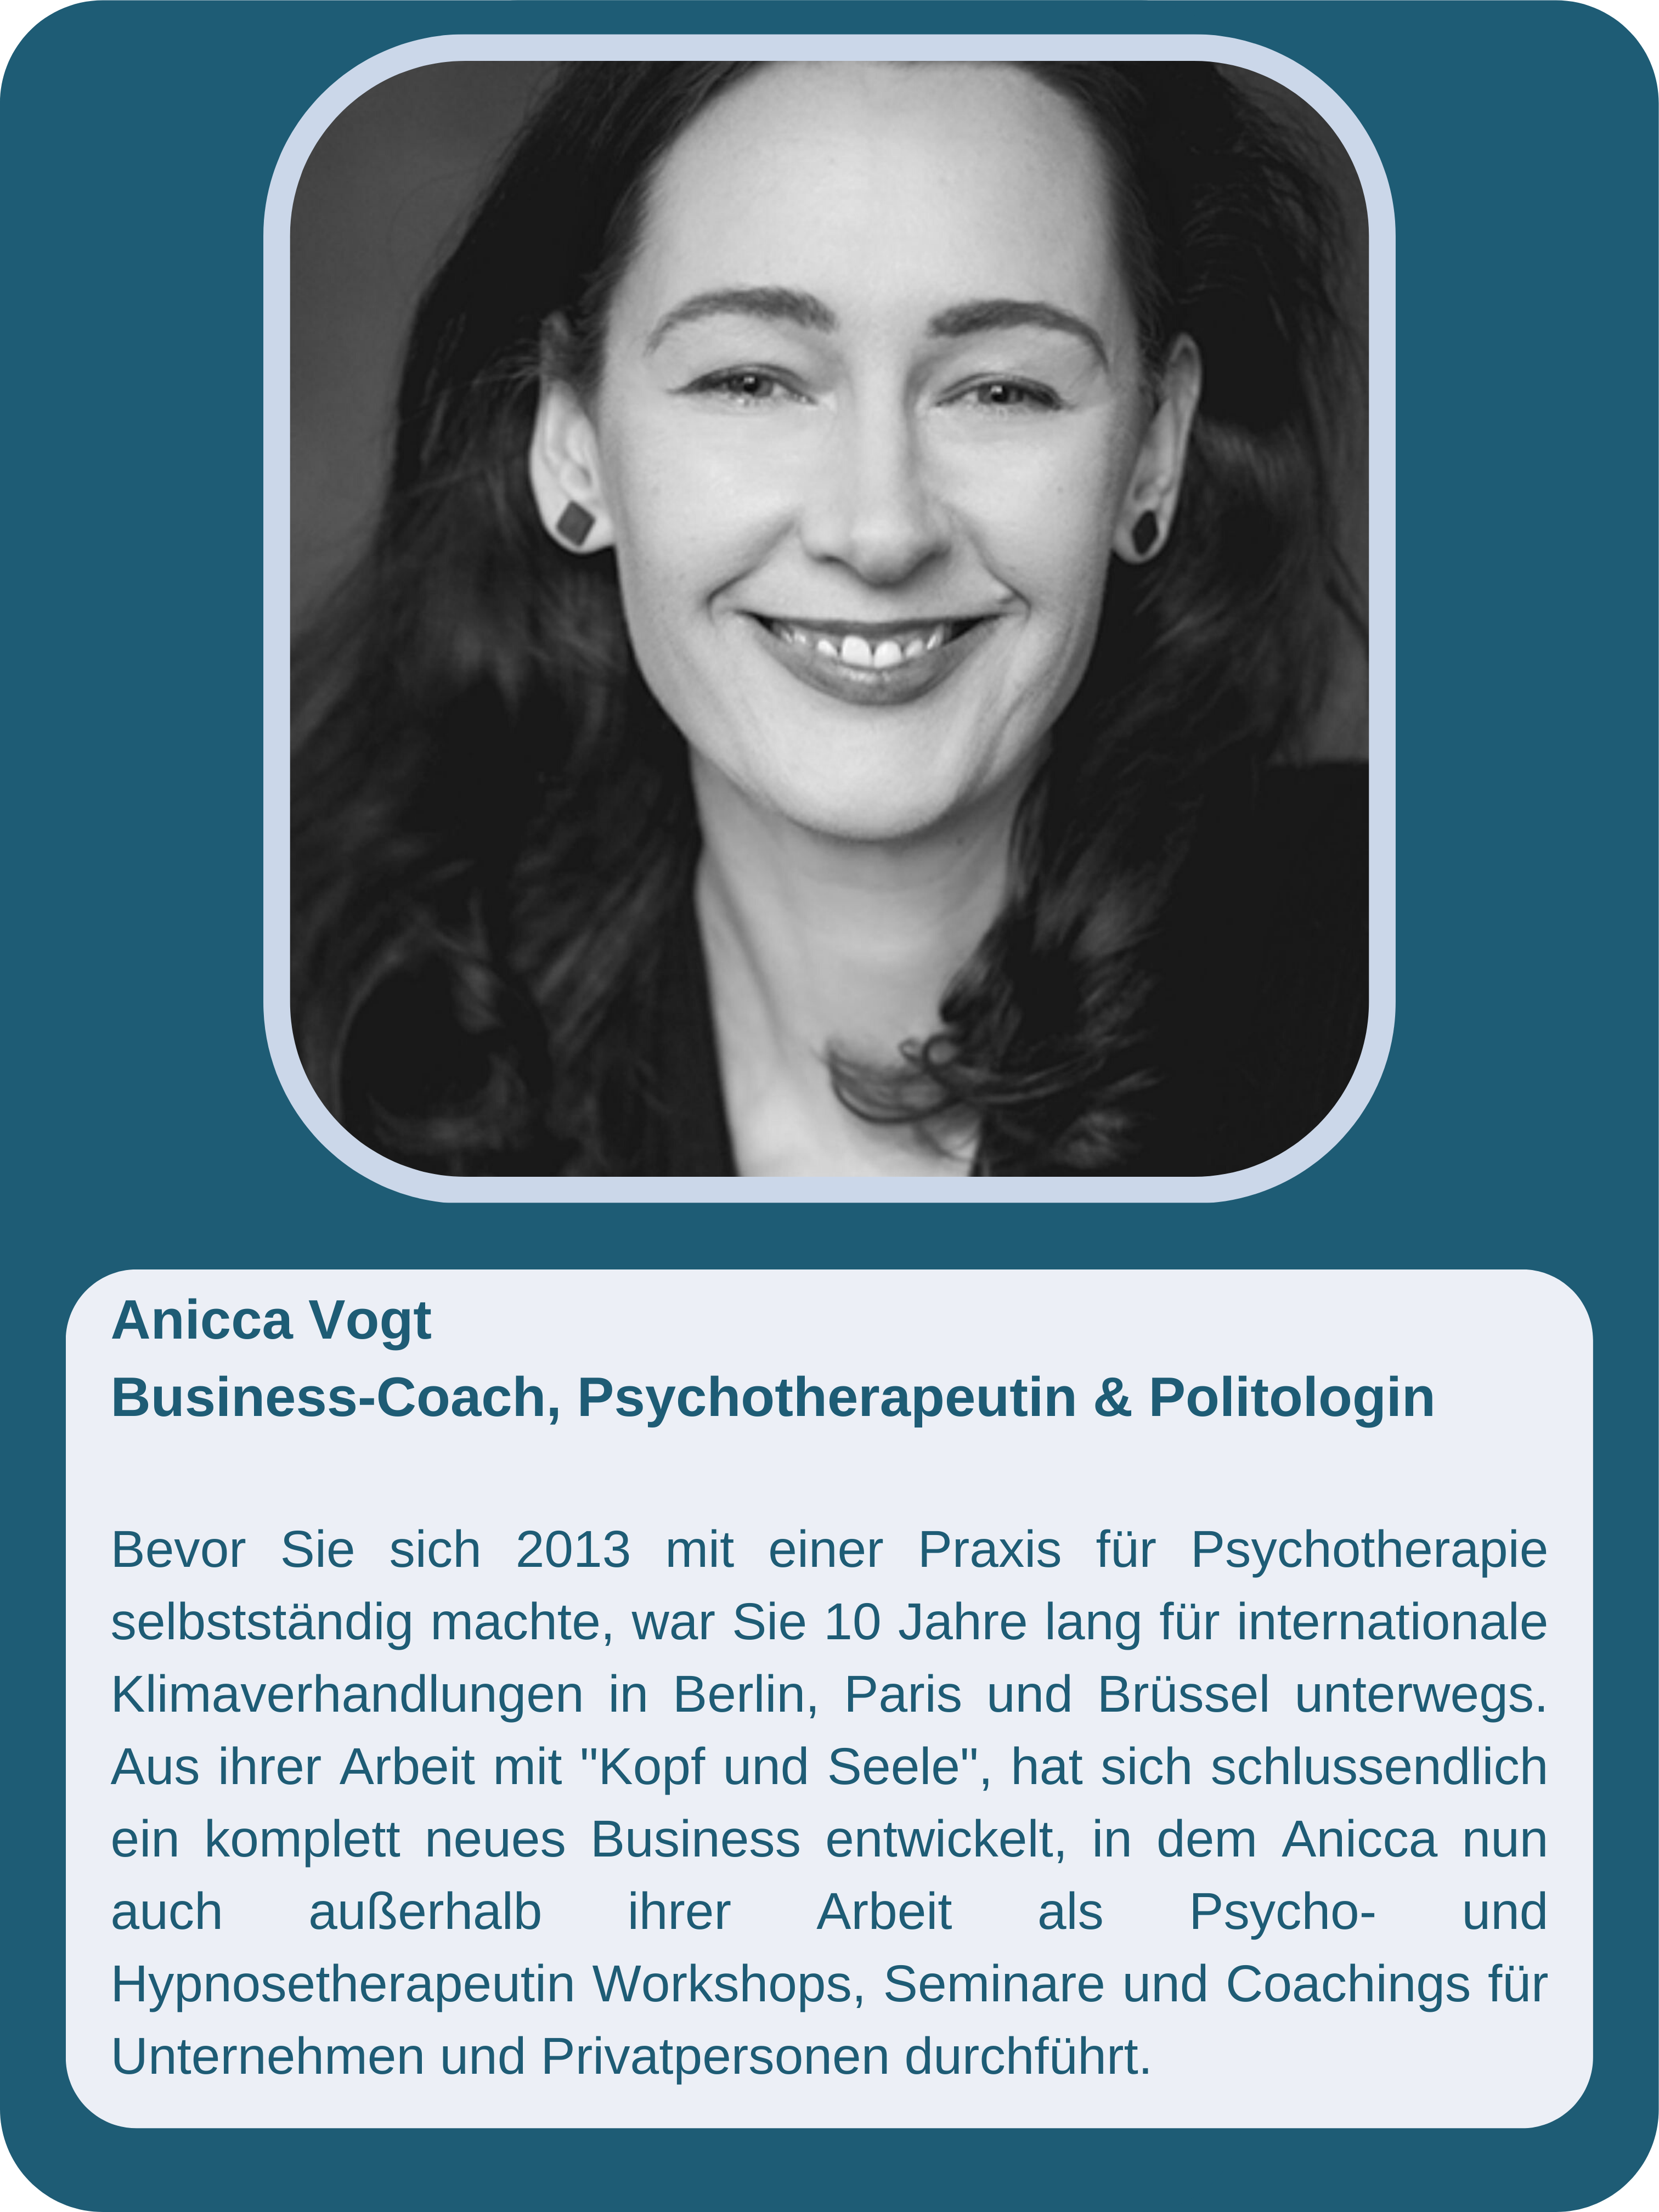 Anicca Vogt